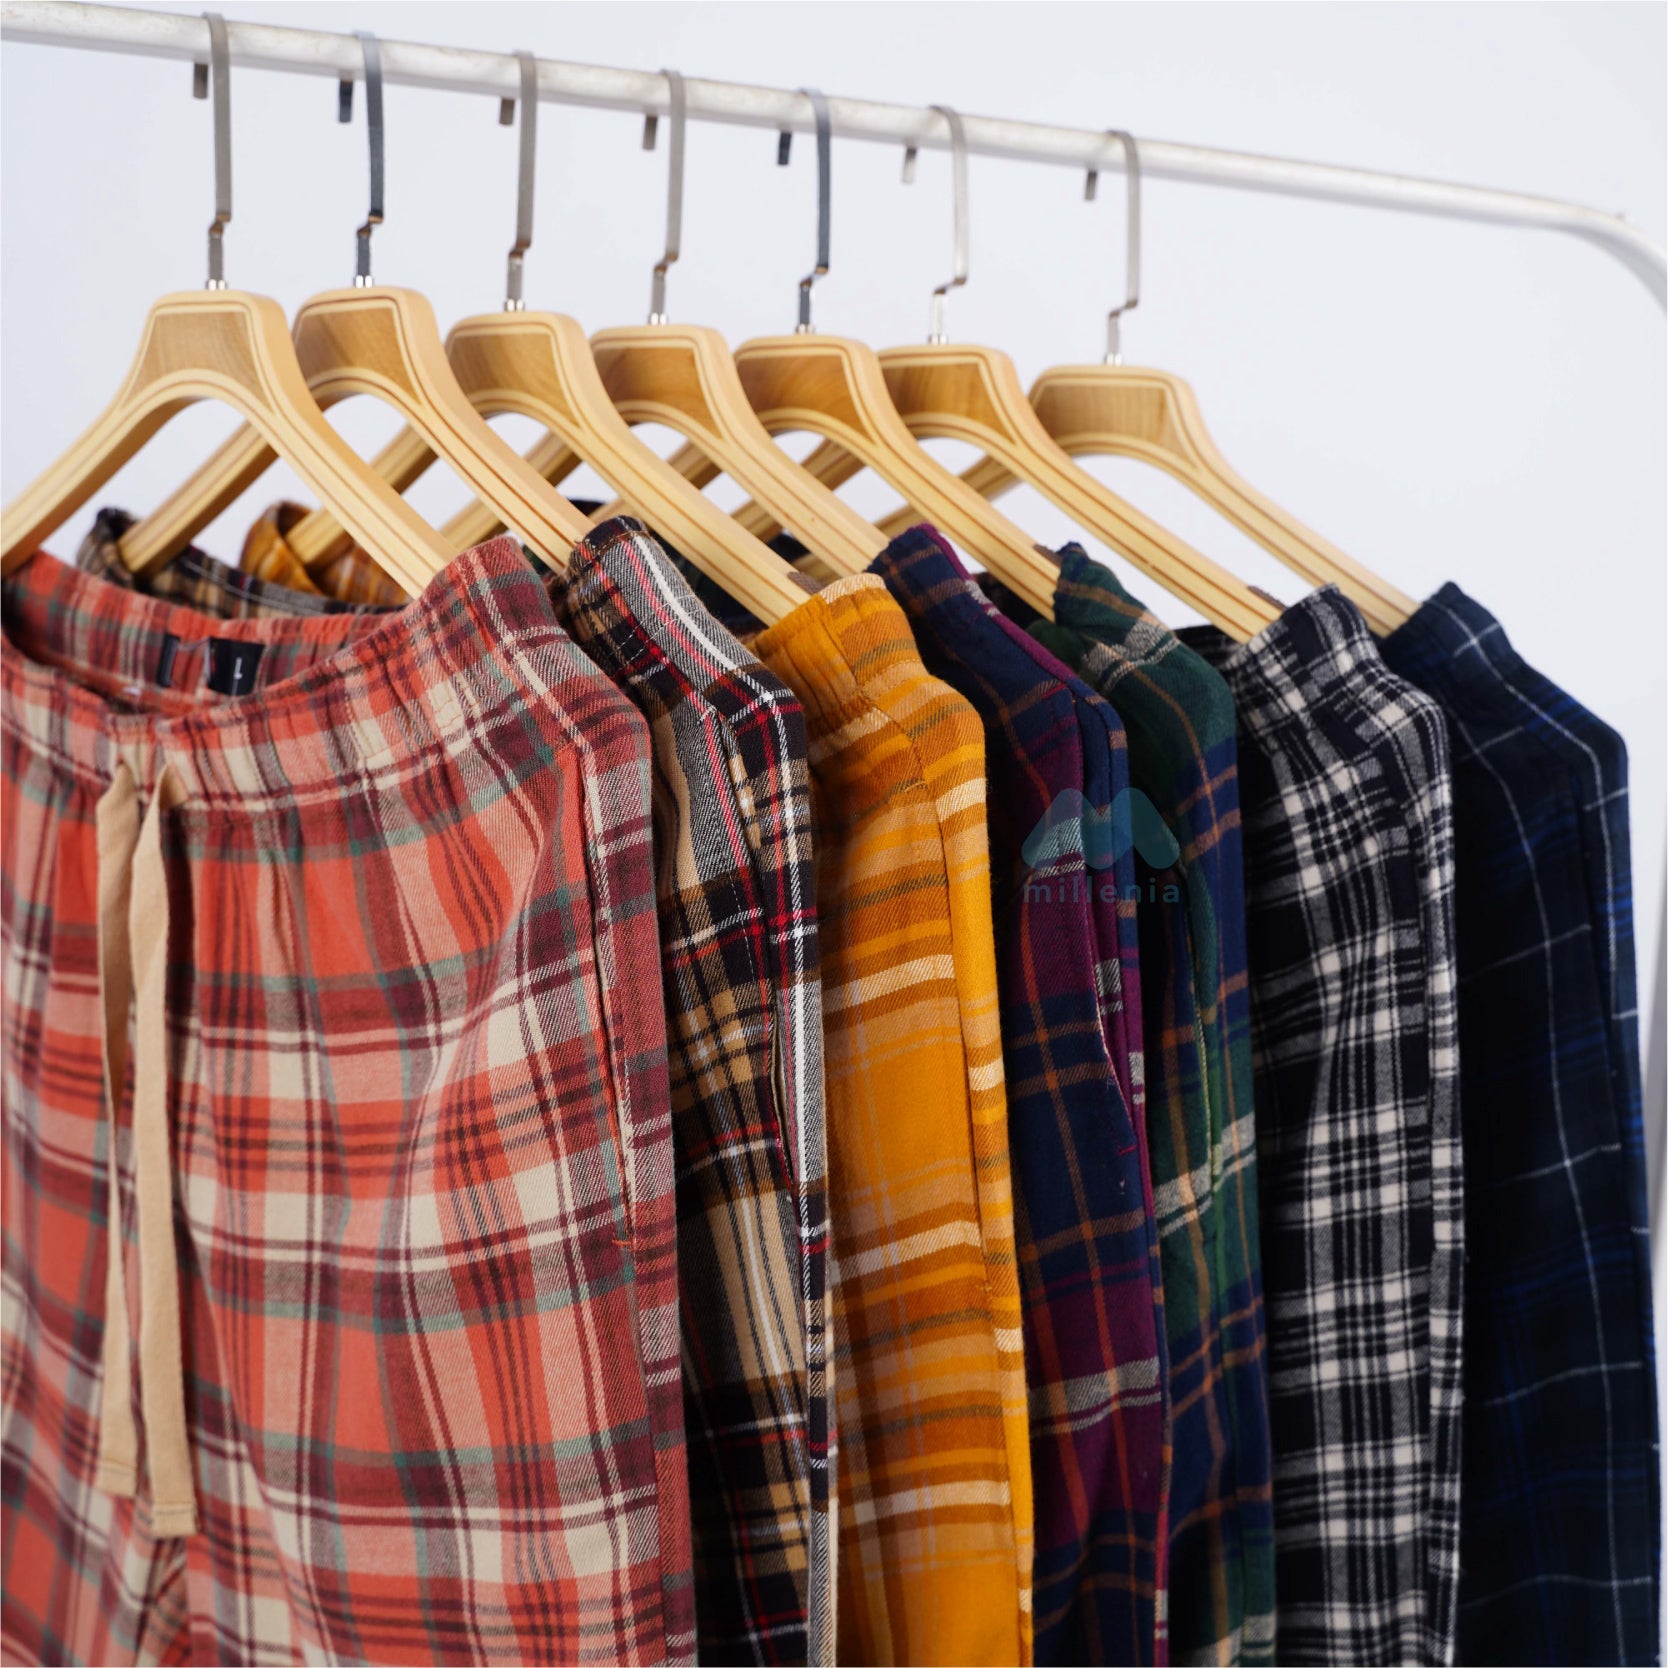 Celana Santai Pria Motif Plaid Bahan Adem Tersedia 7 Pilihan Warna (MO-MMJ 07)